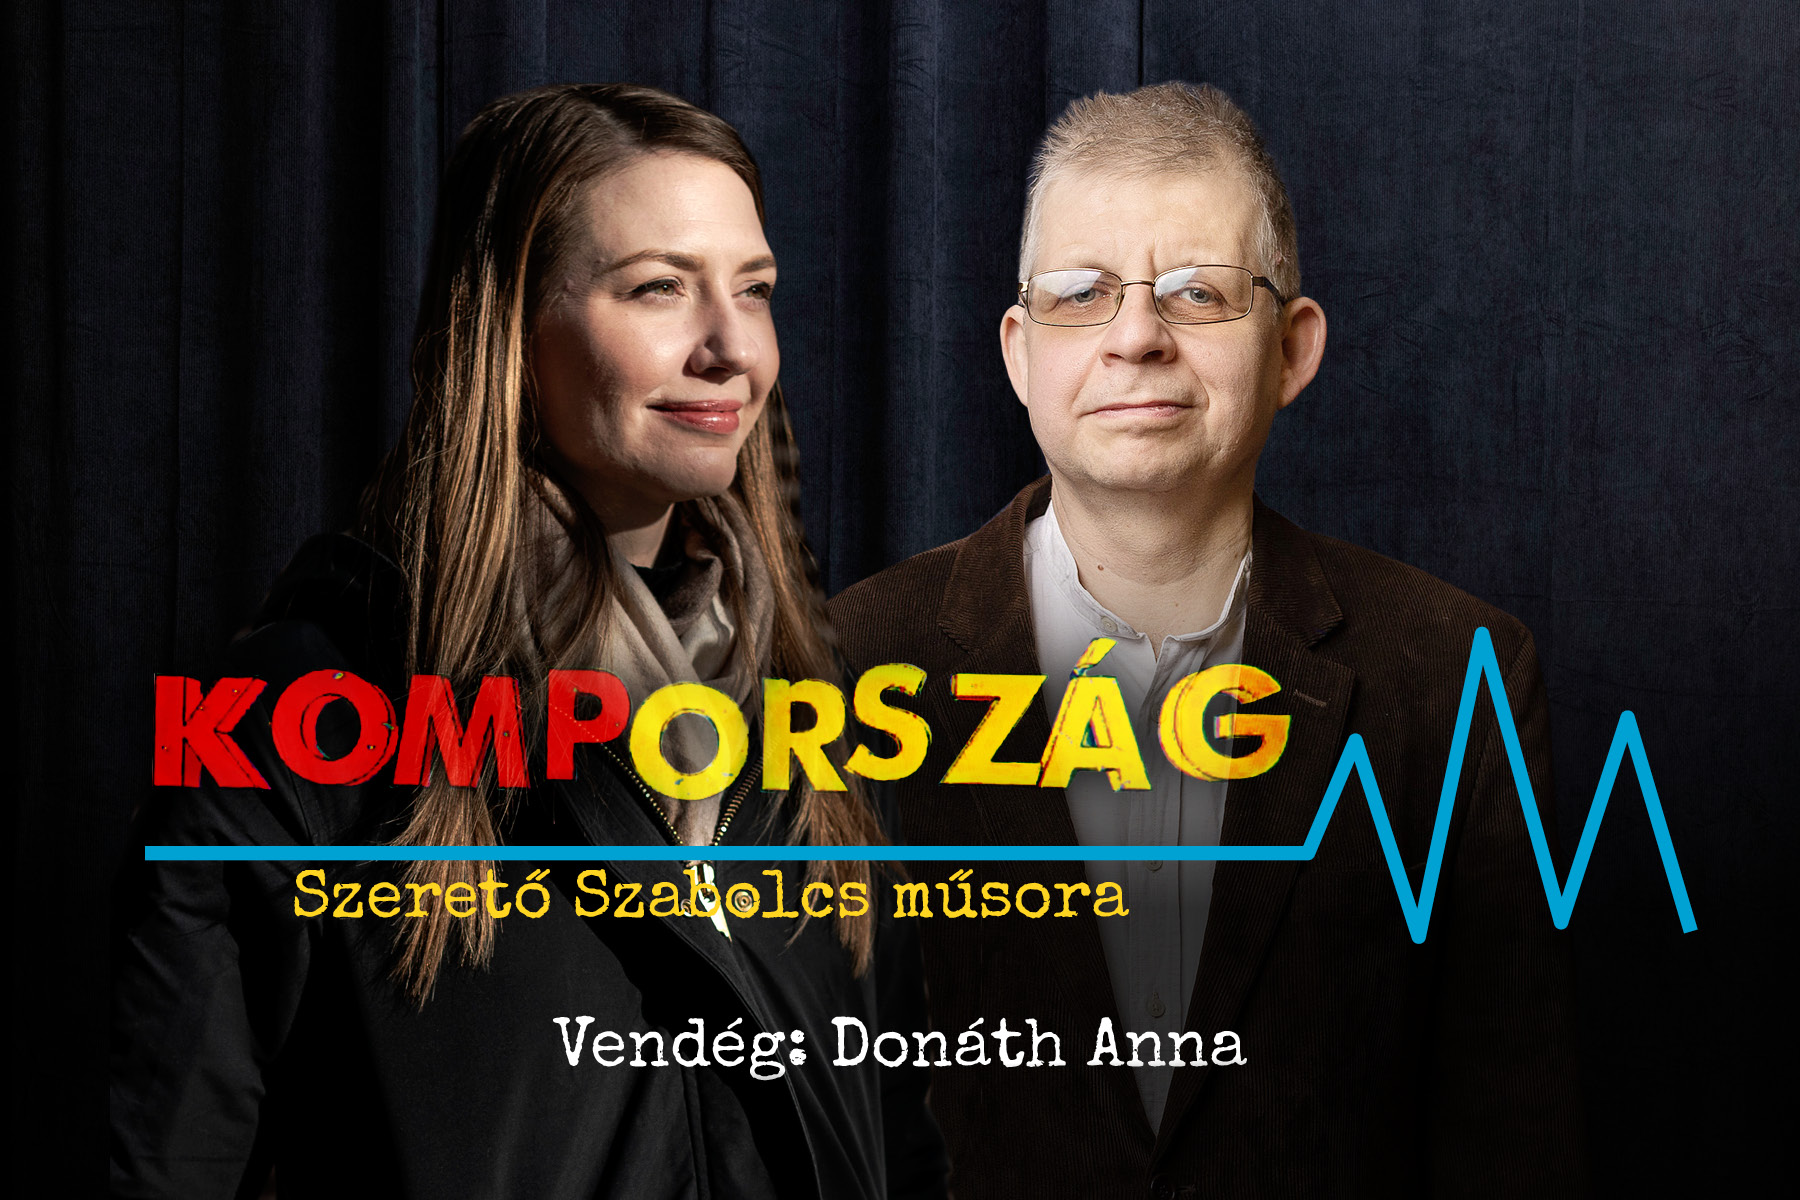 Donáth Anna: Meg kell tisztítani az ellenzéki térfelet – Kompország